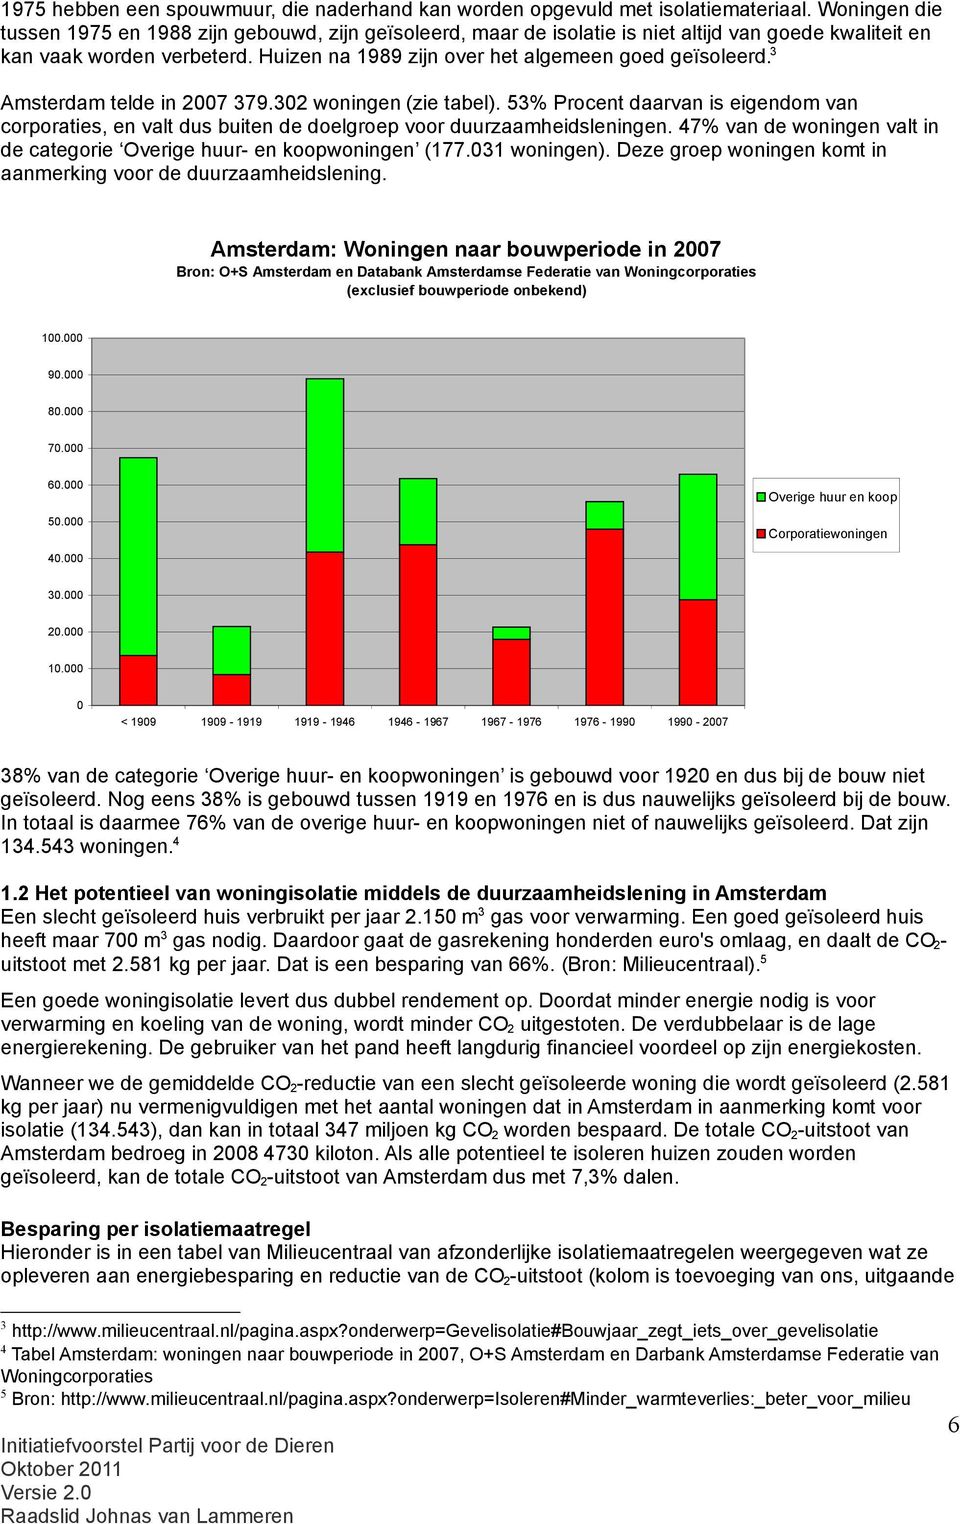 3 Amsterdam telde in 2007 379.302 woningen (zie tabel). 53% Procent daarvan is eigendom van corporaties, en valt dus buiten de doelgroep voor duurzaamheidsleningen.